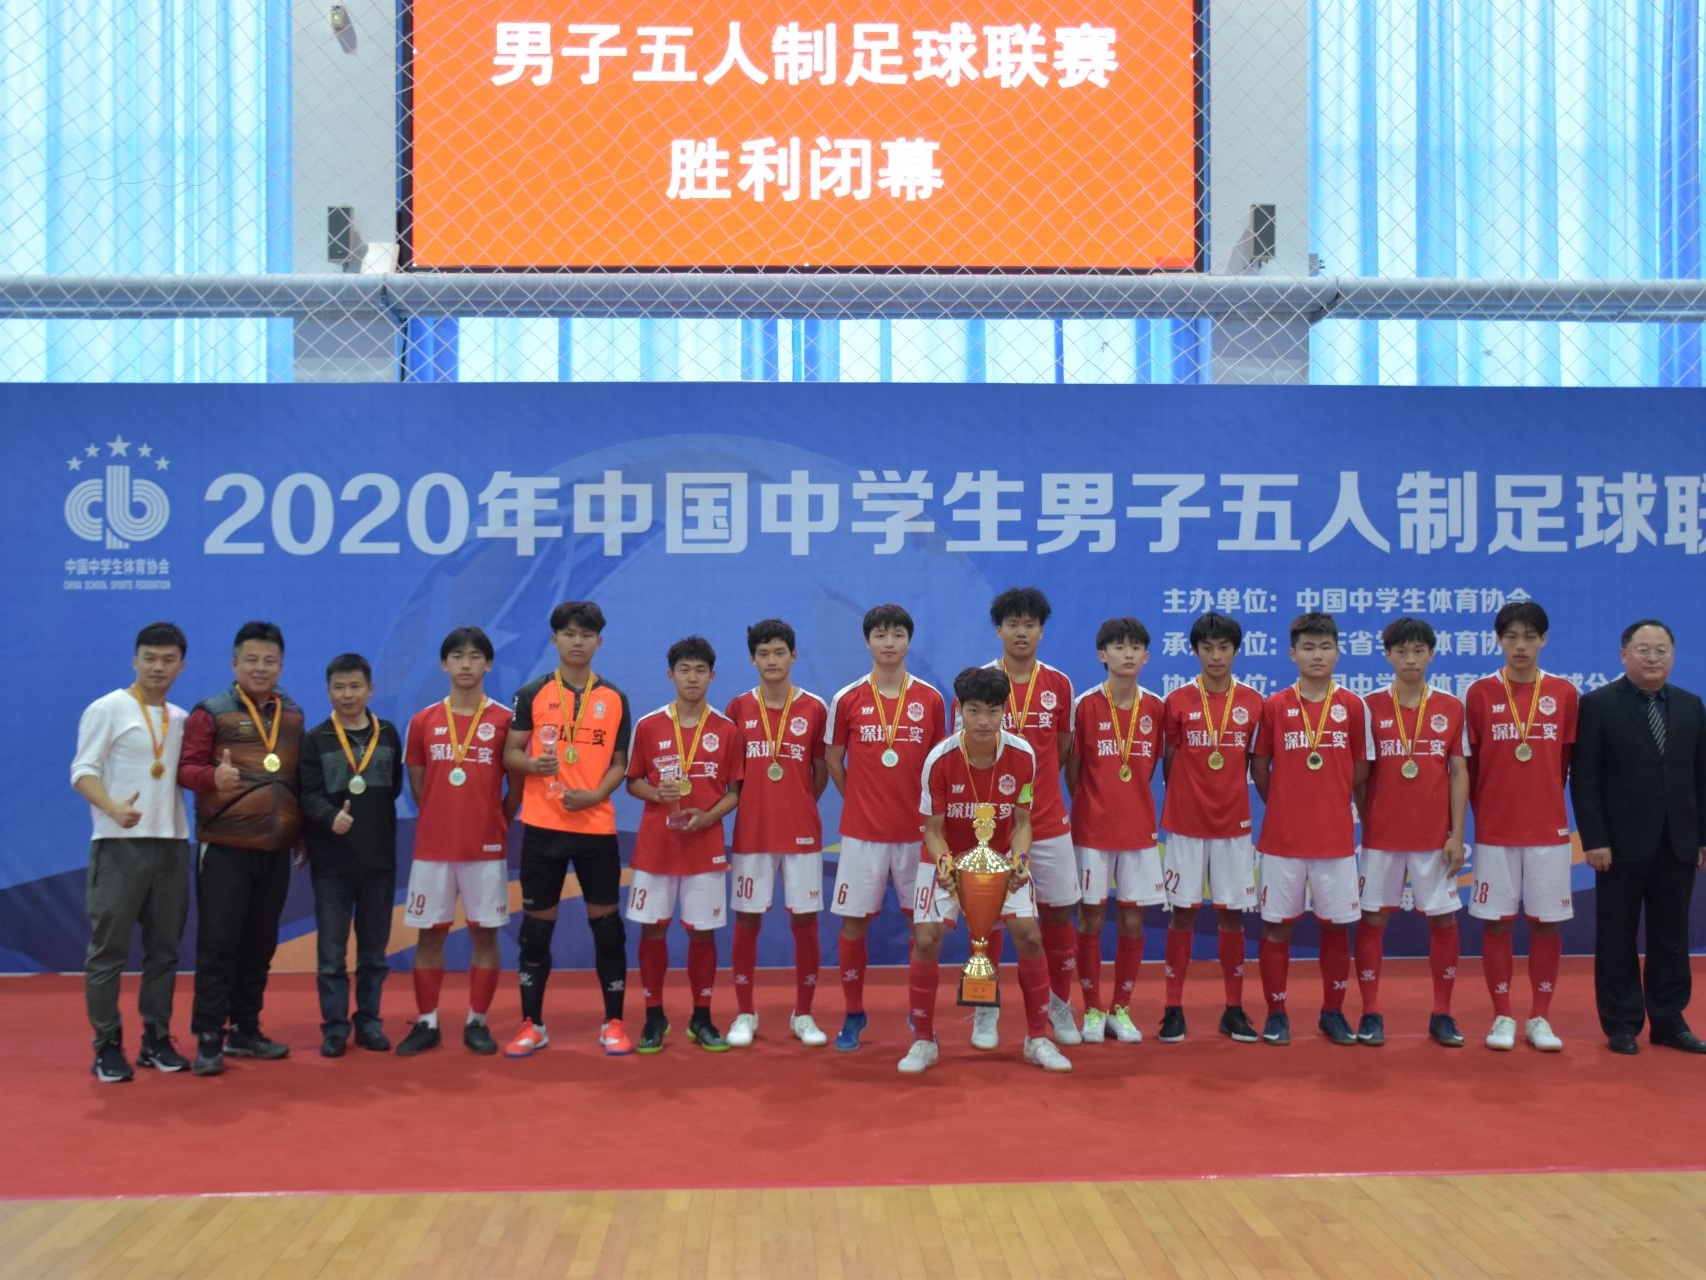 深圳第二实验学校足球队夺得全国中学生男子五人制足球联赛冠军